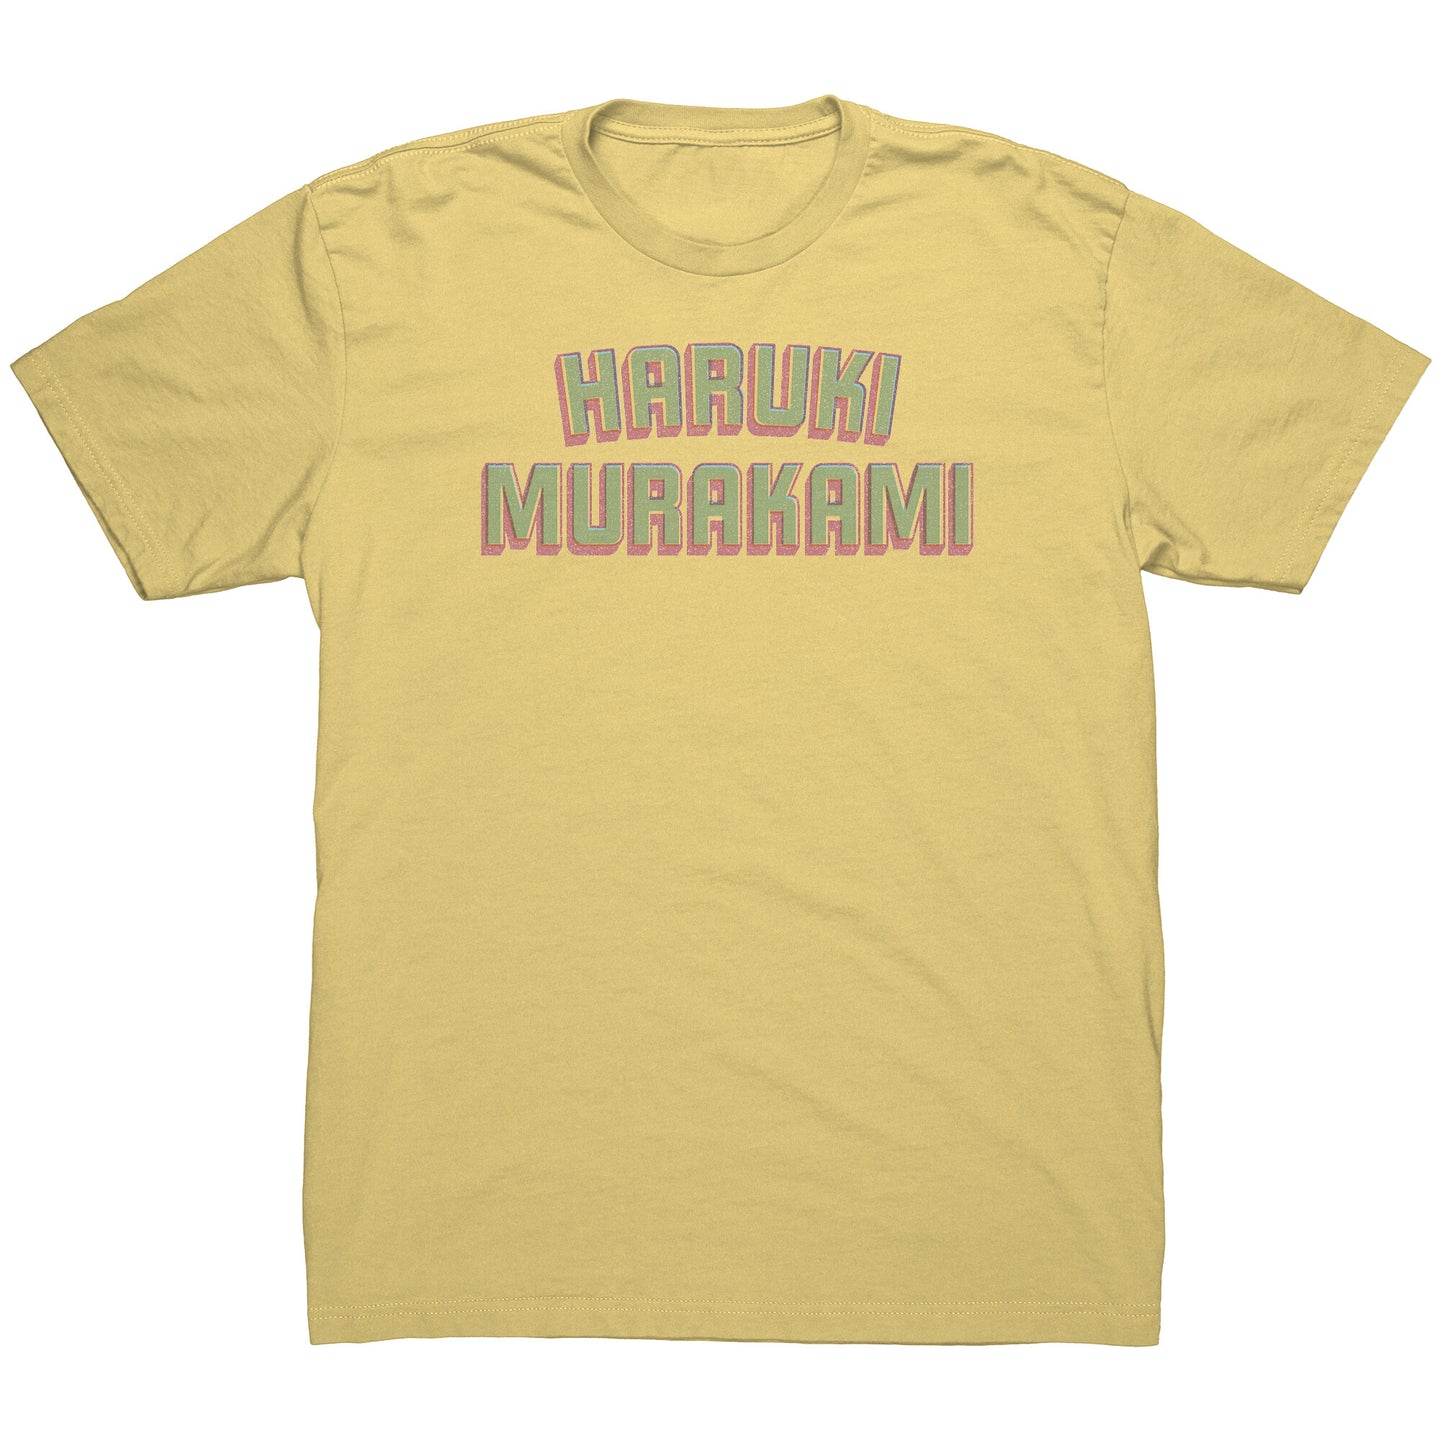 MURAKAMI! t-shirt